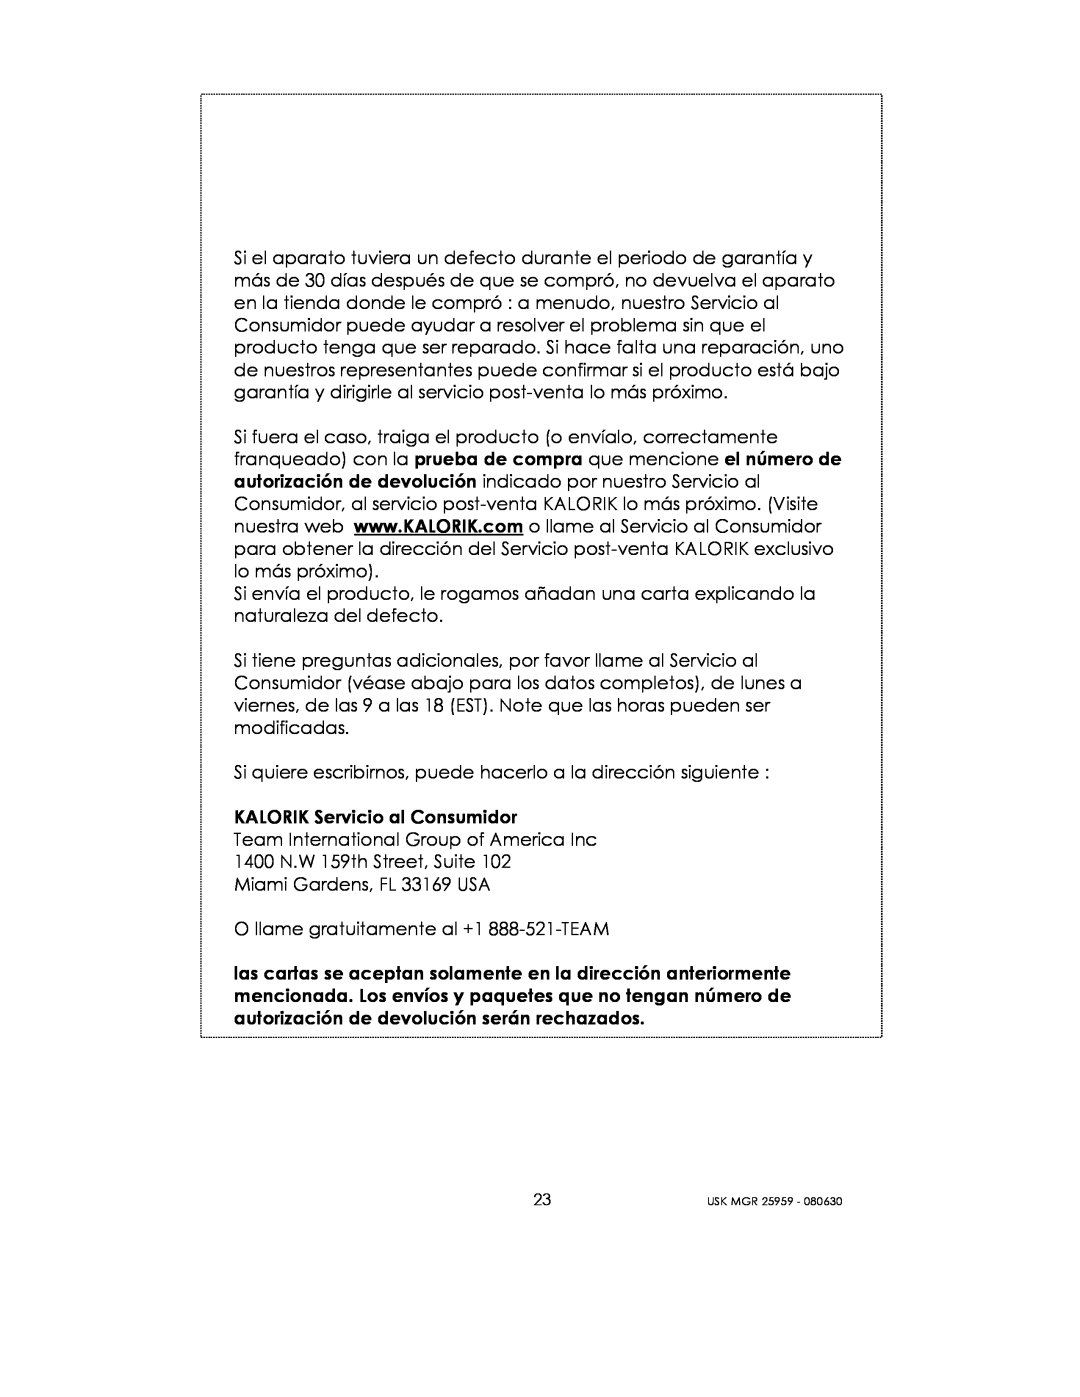 Kalorik USK MGR 25959 manual KALORIK Servicio al Consumidor 